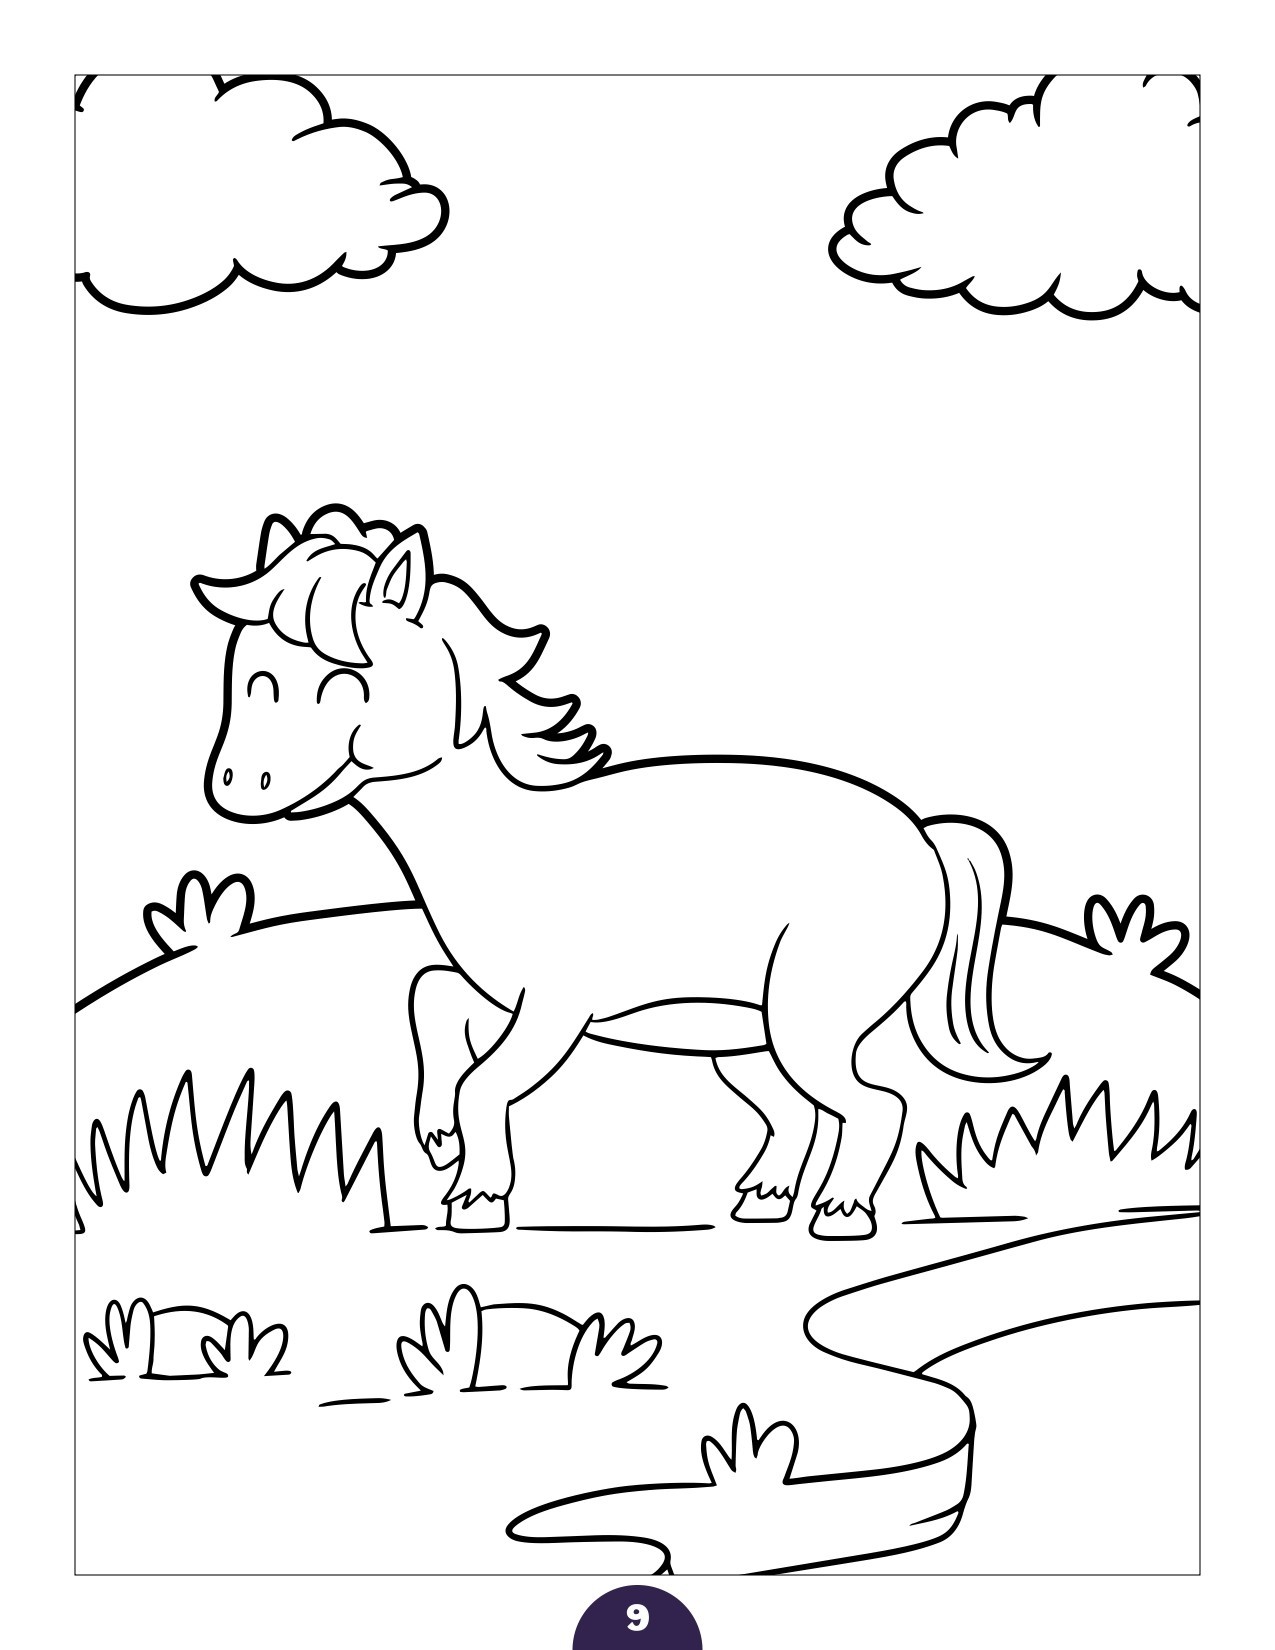 Disegno da colorare di cavallo per bambini